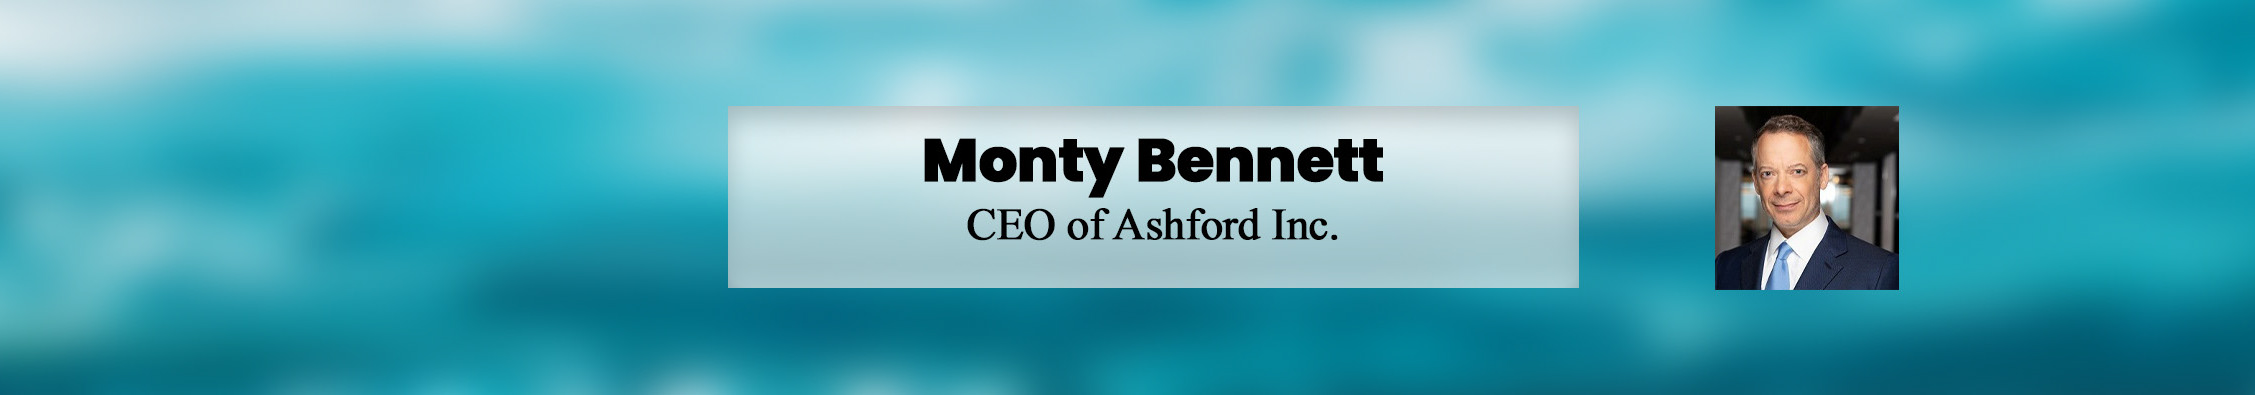 Bannière de profil de Monty Bennett